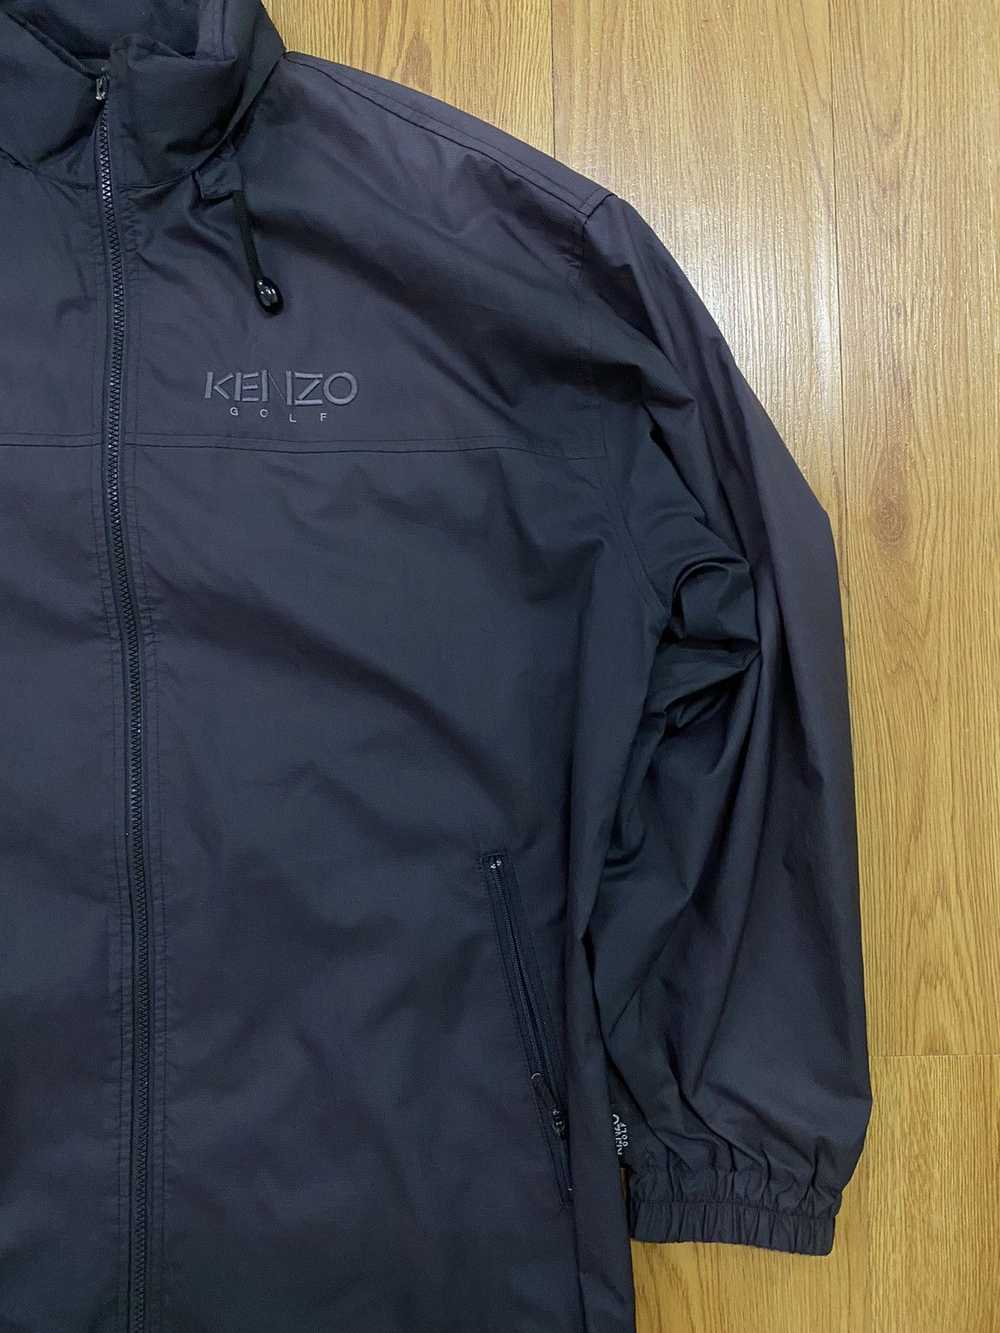 Designer × Japanese Brand × Kenzo Kenzo Golf Ligh… - image 3